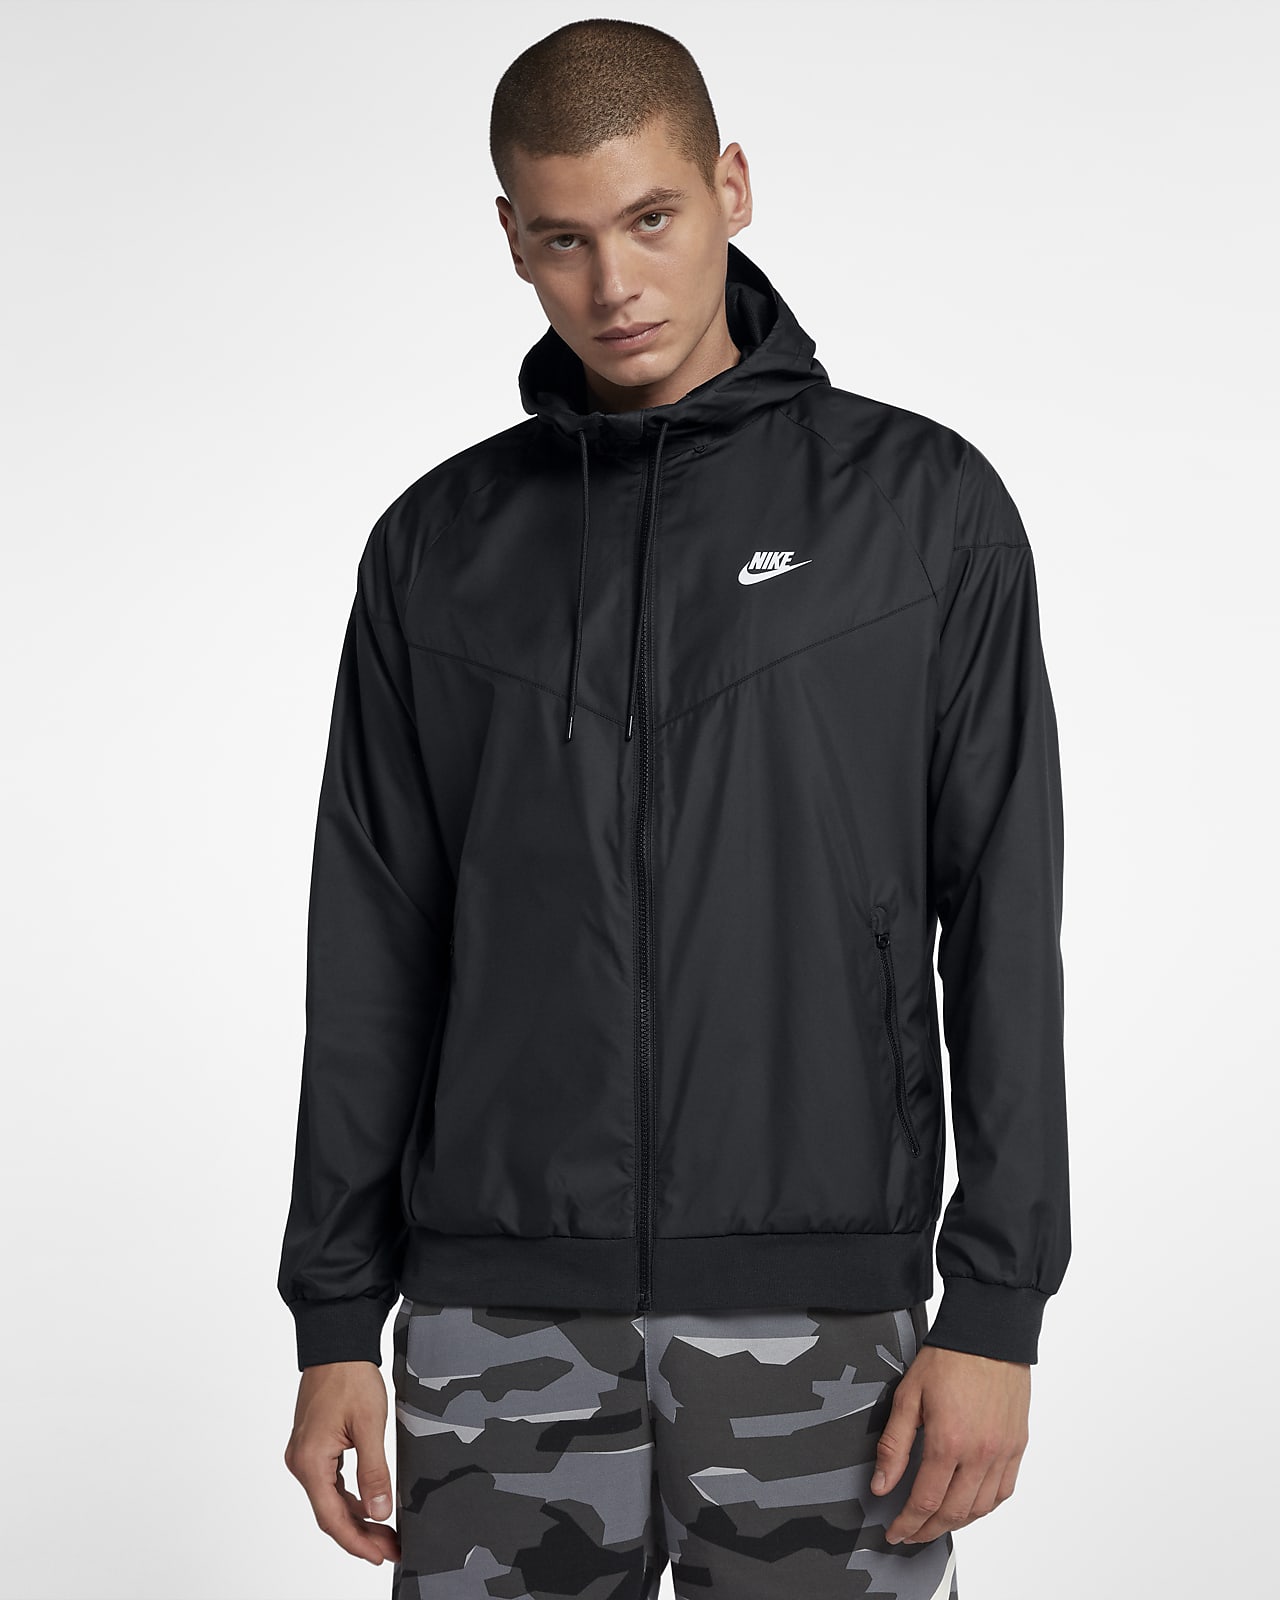 Nike Men's Coach Prime Black Windrunner Jacket